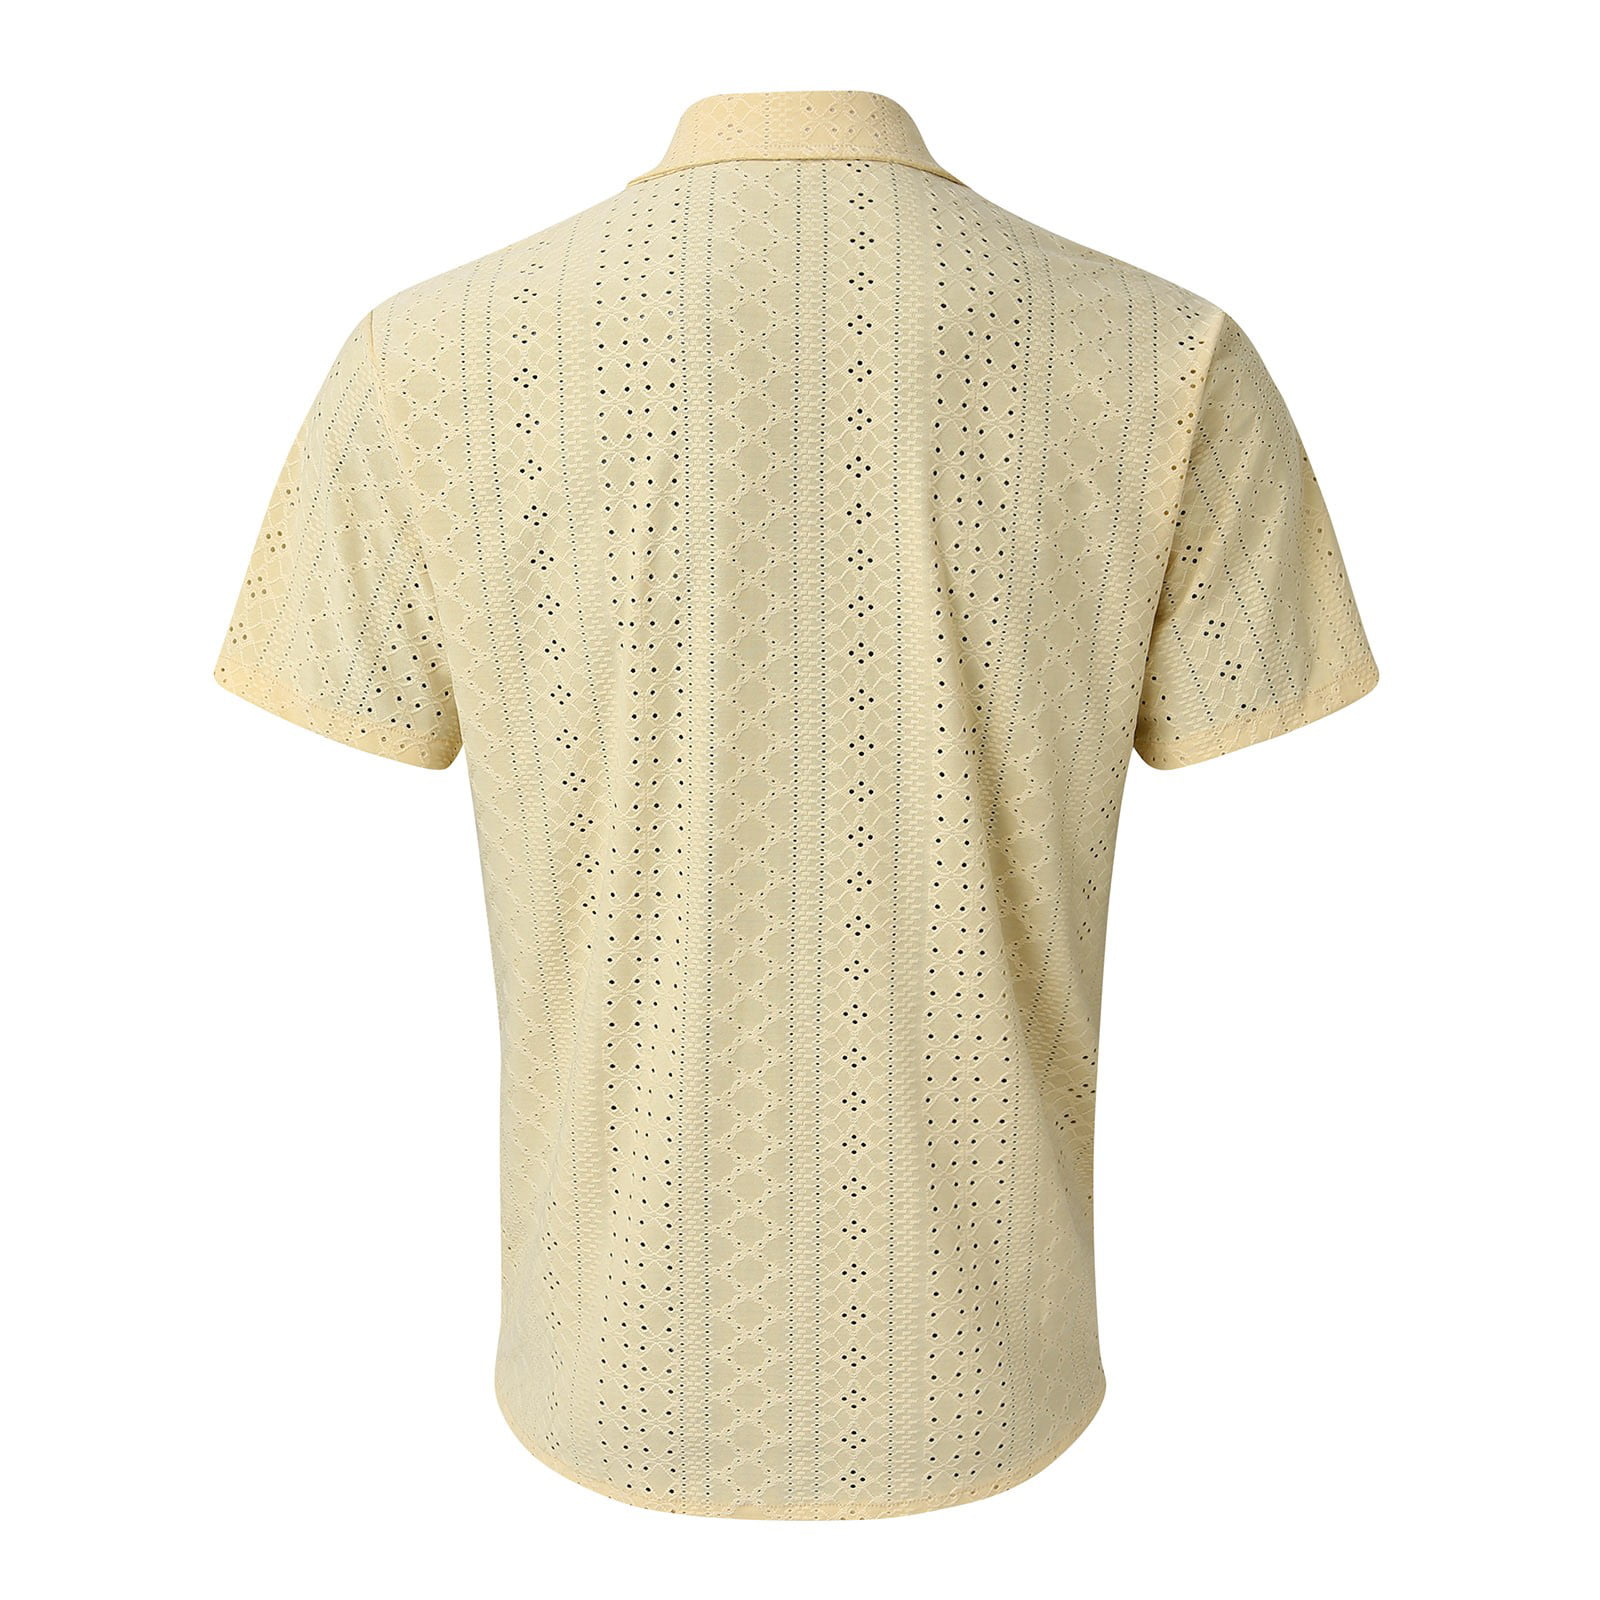 adviicd Mens Button Up Shirts Short Sleeve Men's Teaser Short Sleeve  Fishing Button Down Shirt Yellow 2XL 